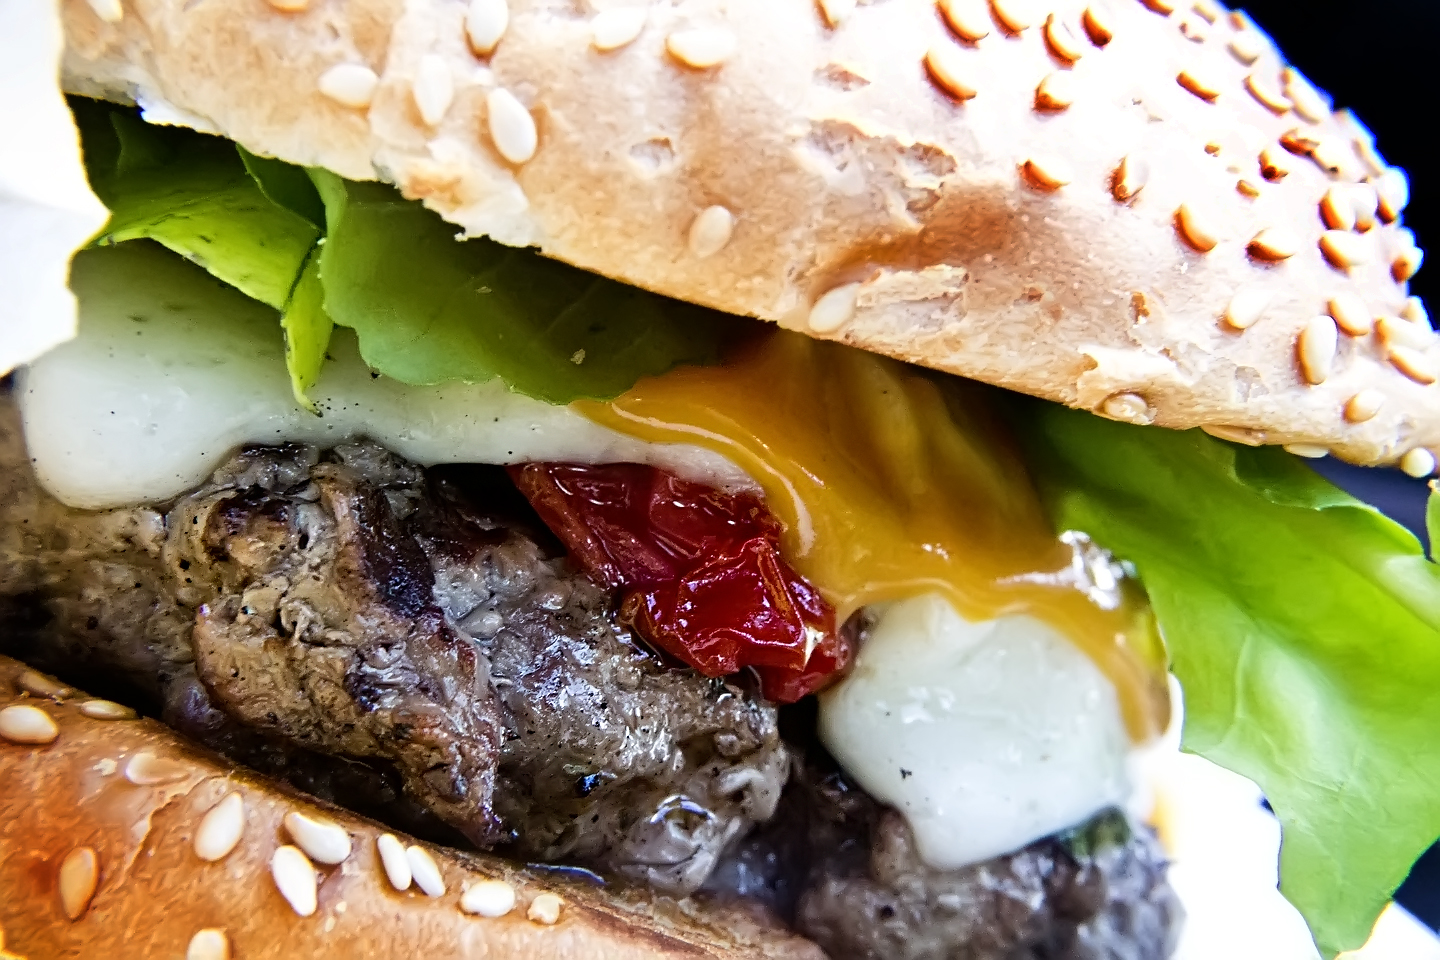 Científicos de la UCM han creado una hamburguesa enriquecida con calcio. Imagen: Antonio Thomás Koenigkam Oliveira. Fuente: Flickr.